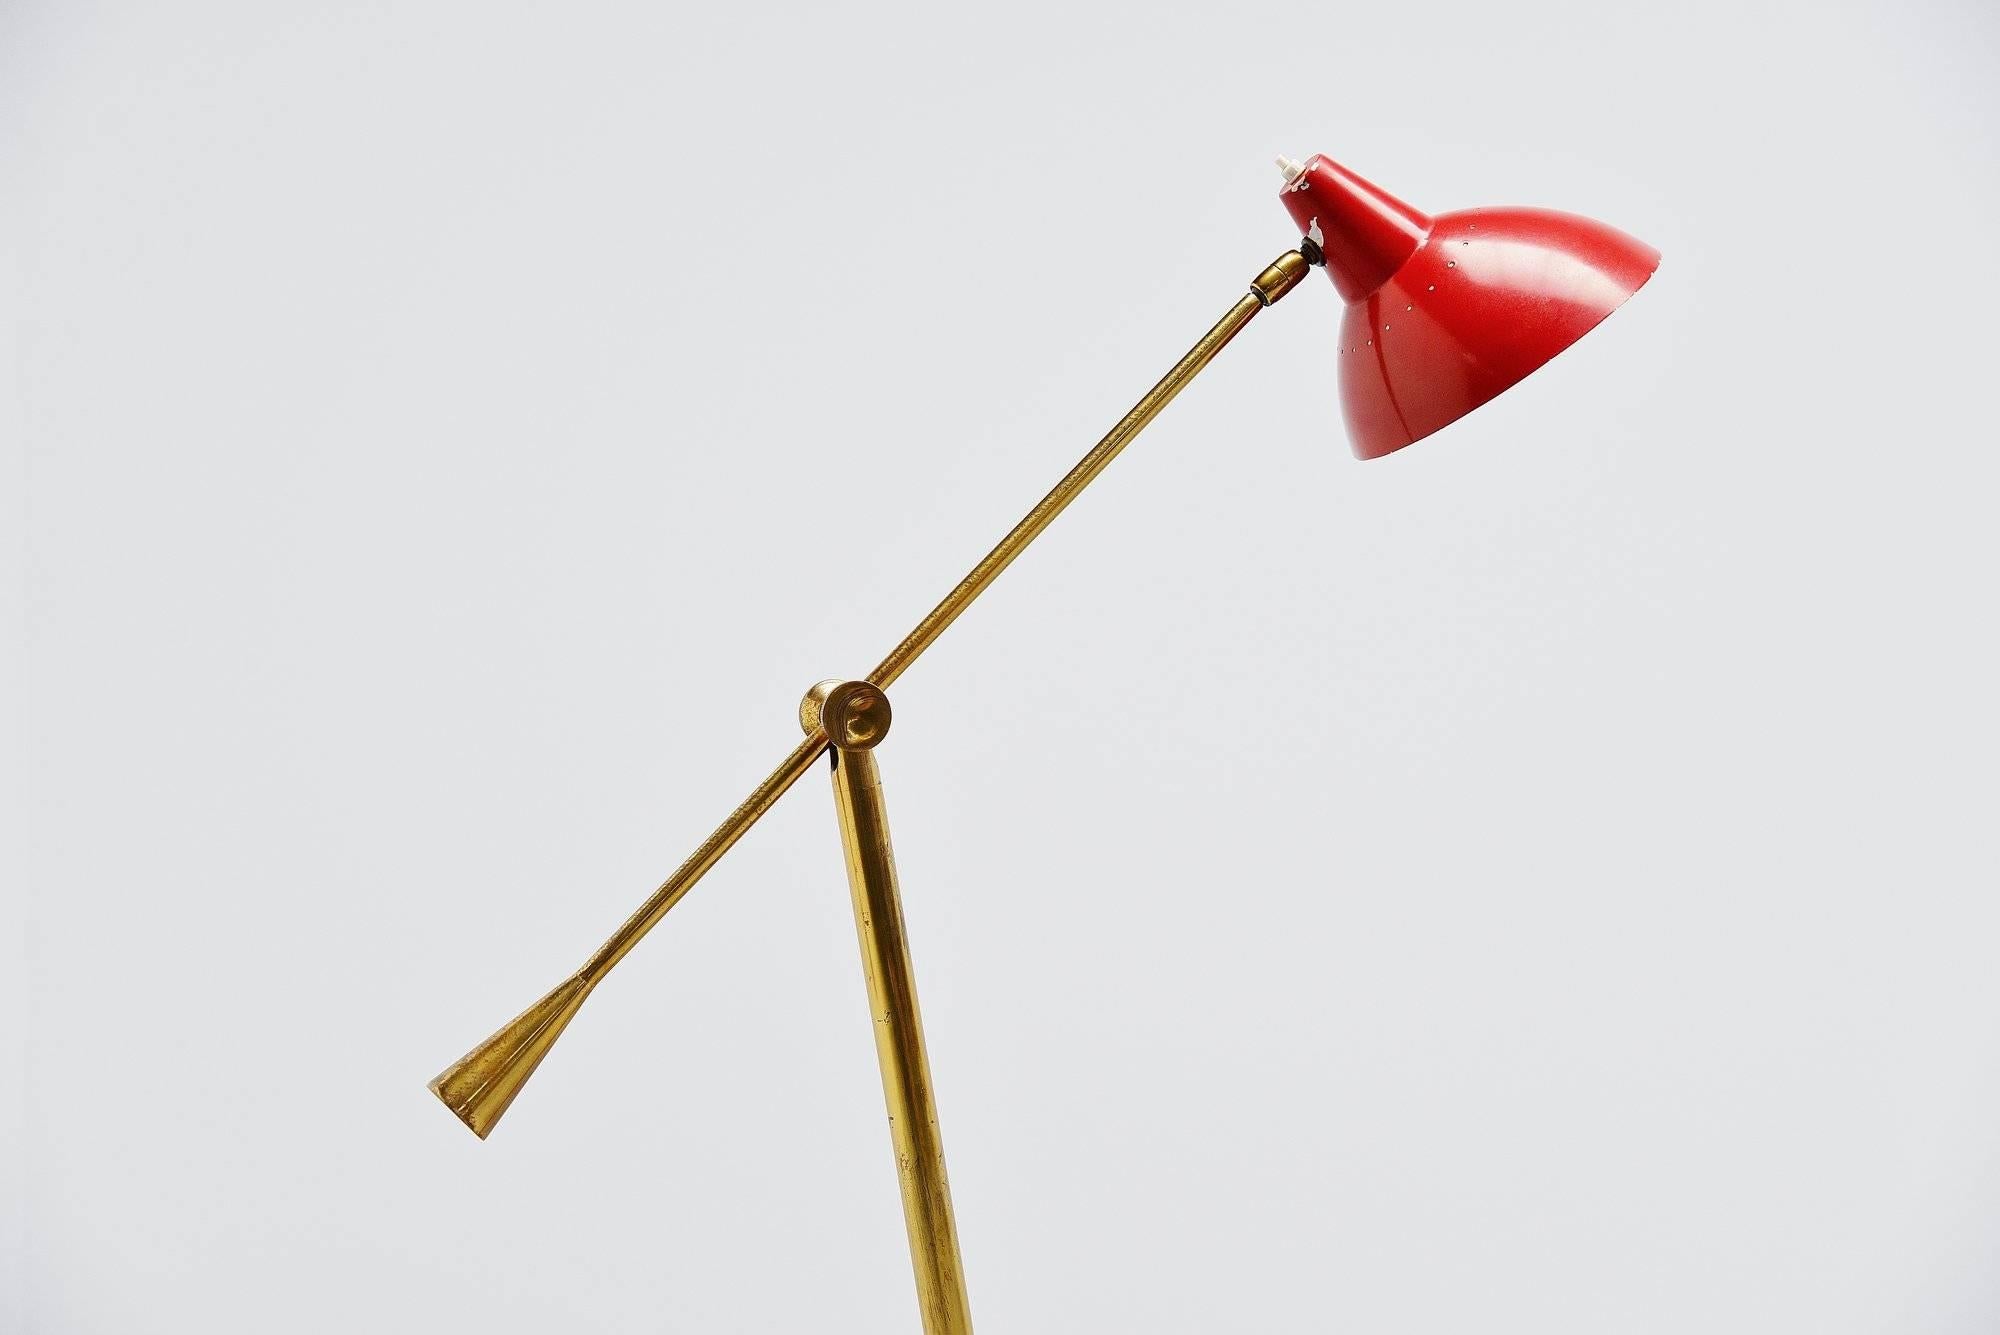 Très beau lampadaire de forme italienne typique de Stilnovo, Italie, 1950. Le socle est composé d'une base ronde en marbre brun et d'un bras en laiton avec un poids pour l'équilibre. L'abat-jour est peint en rouge à l'origine. Cette lampe peut être